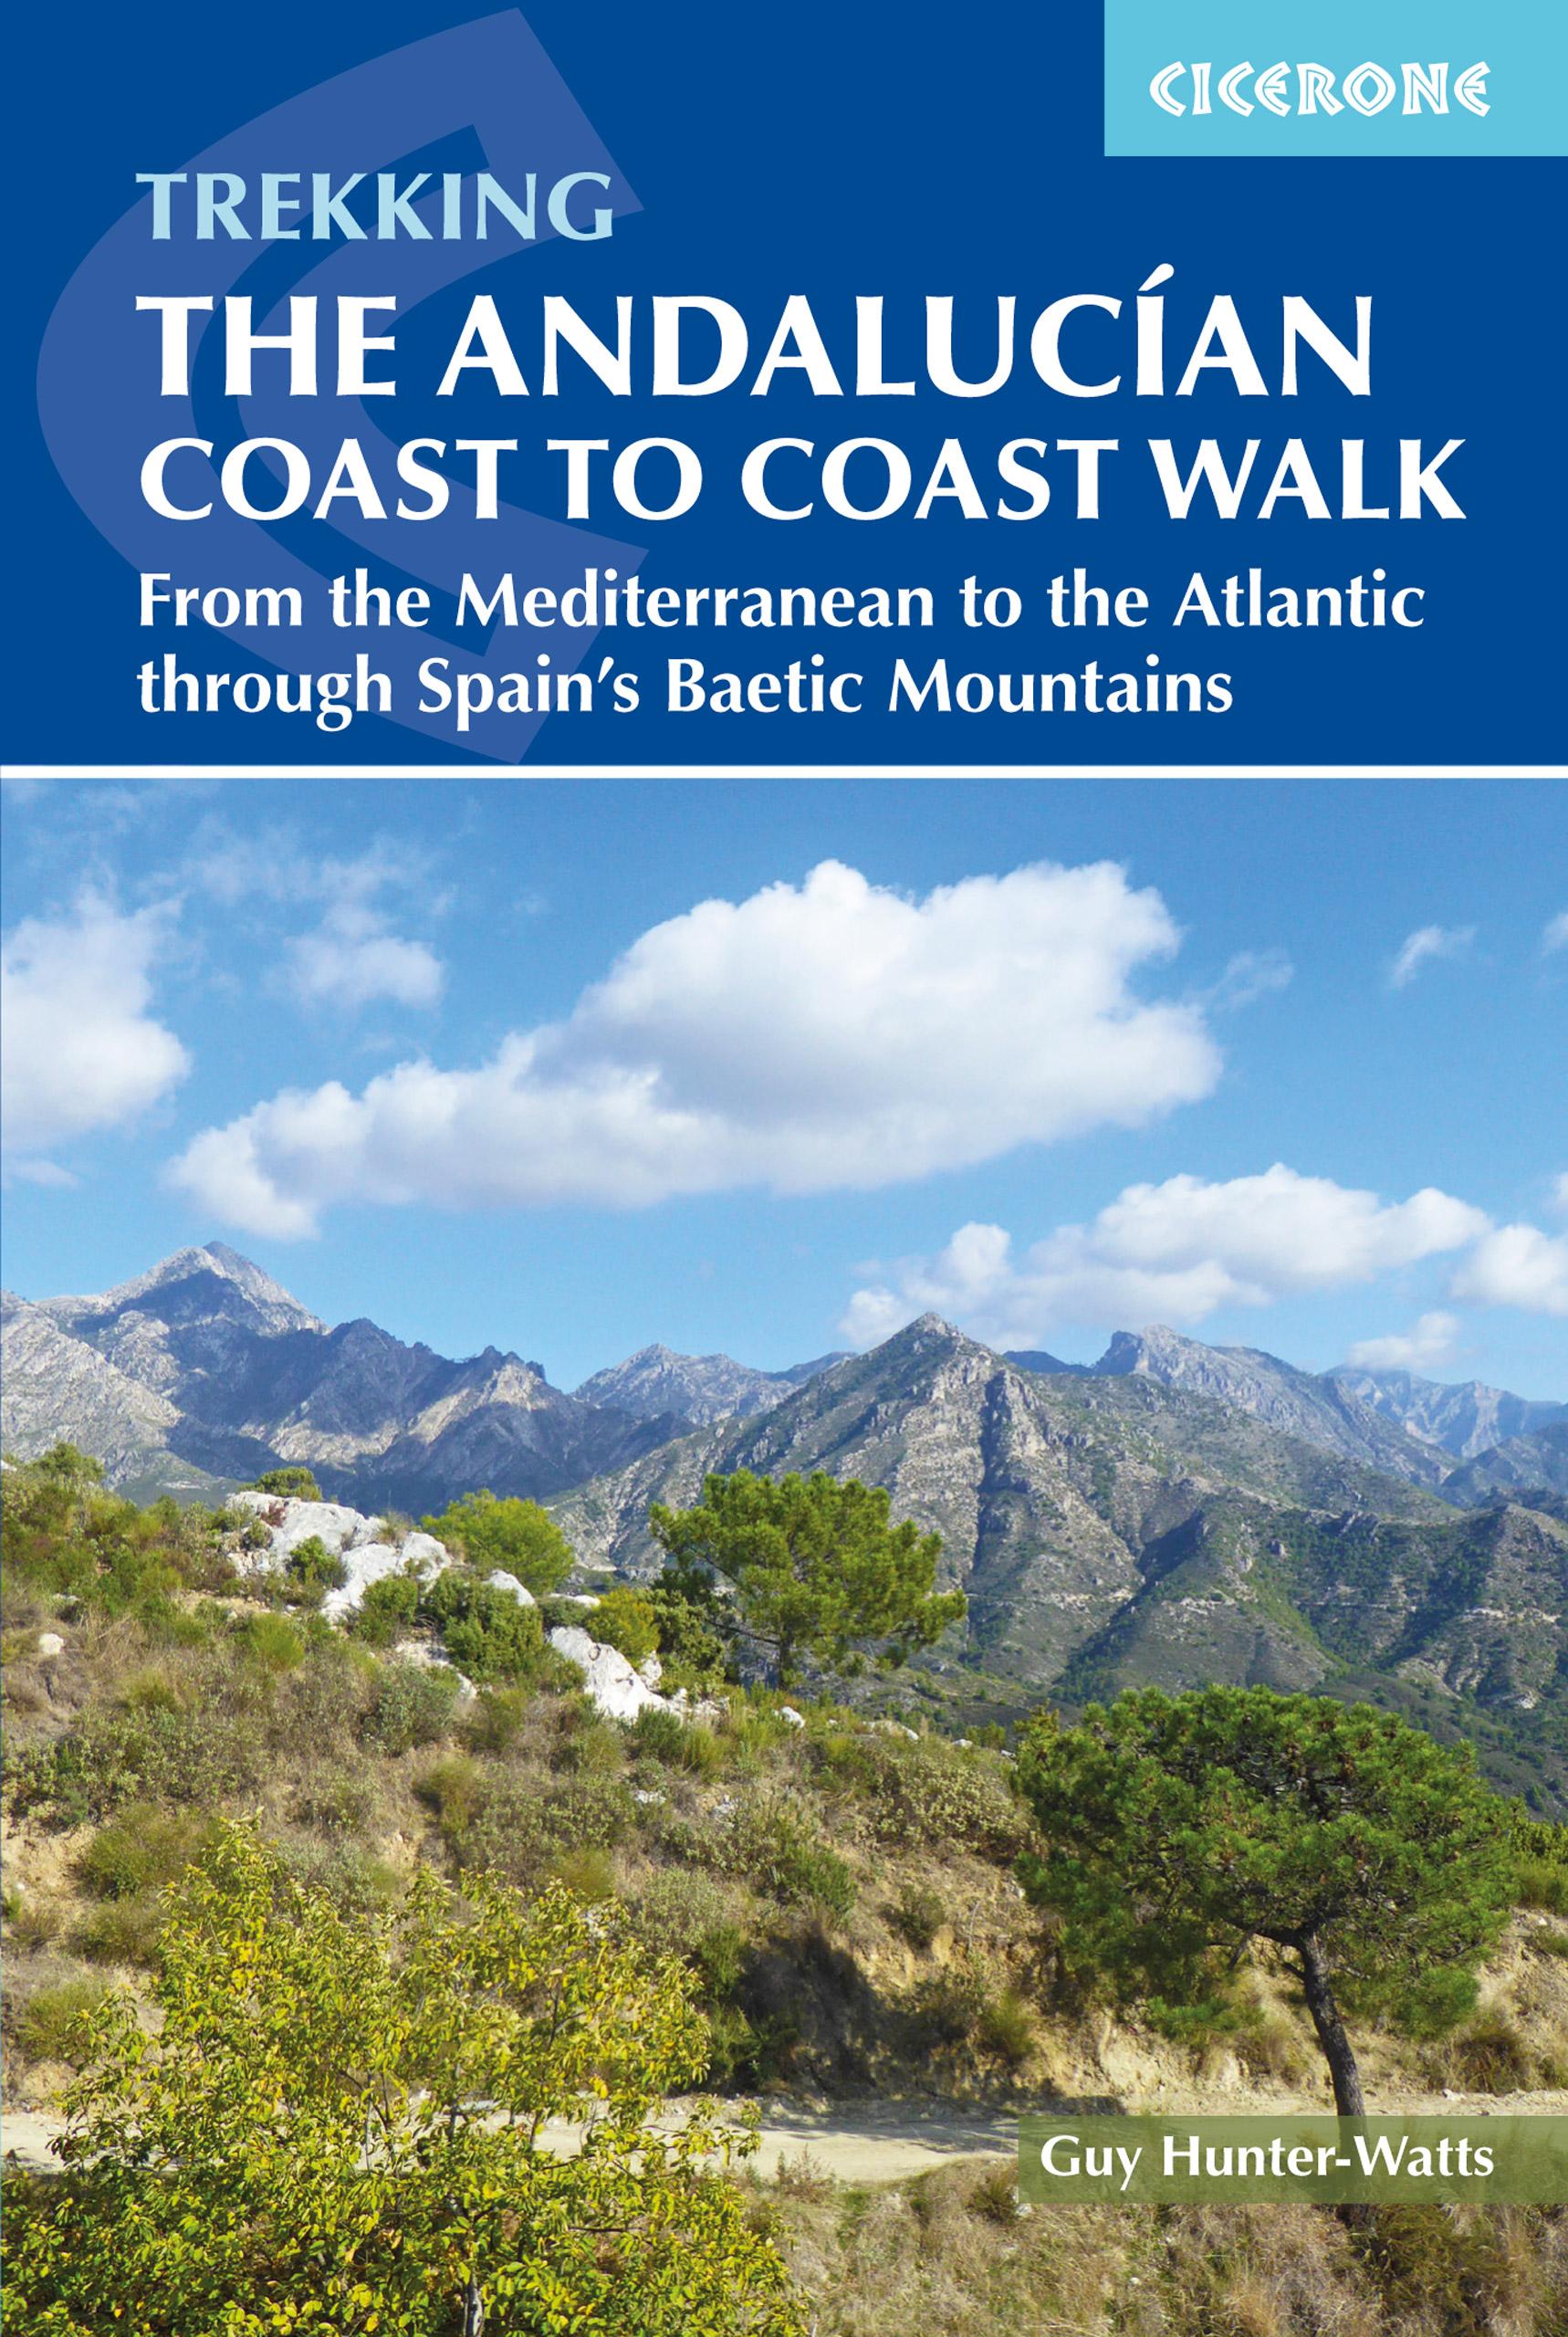 Andalucian Coast to Coast Walk